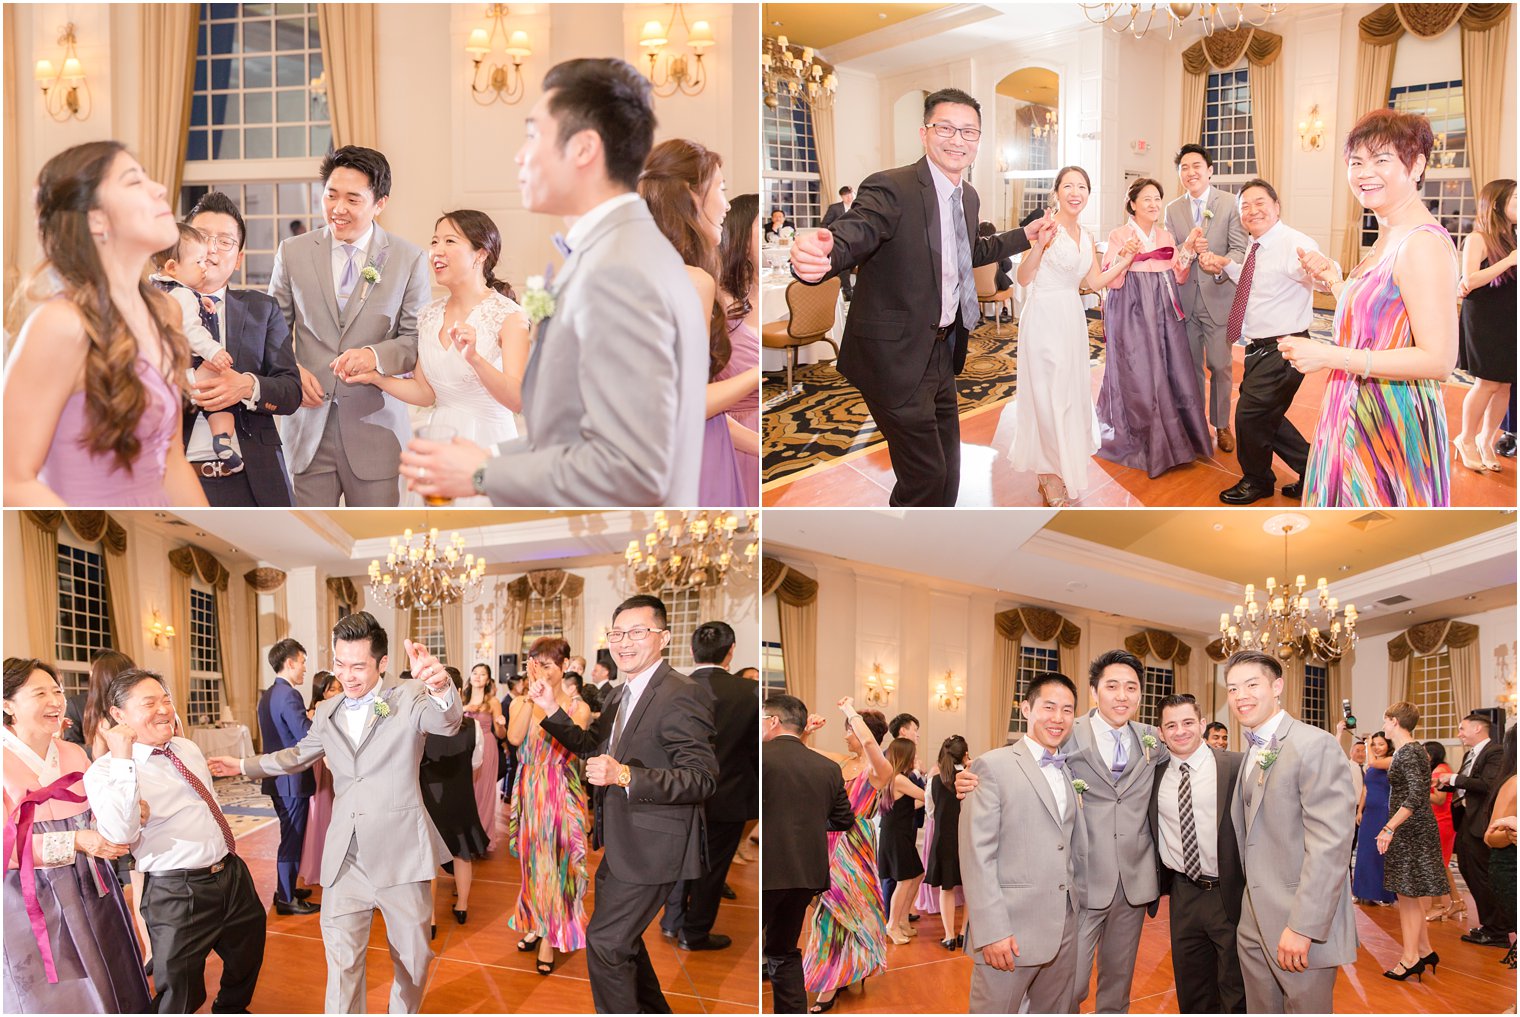 Fun candid photos at Wedding reception at Crystal Springs Resort